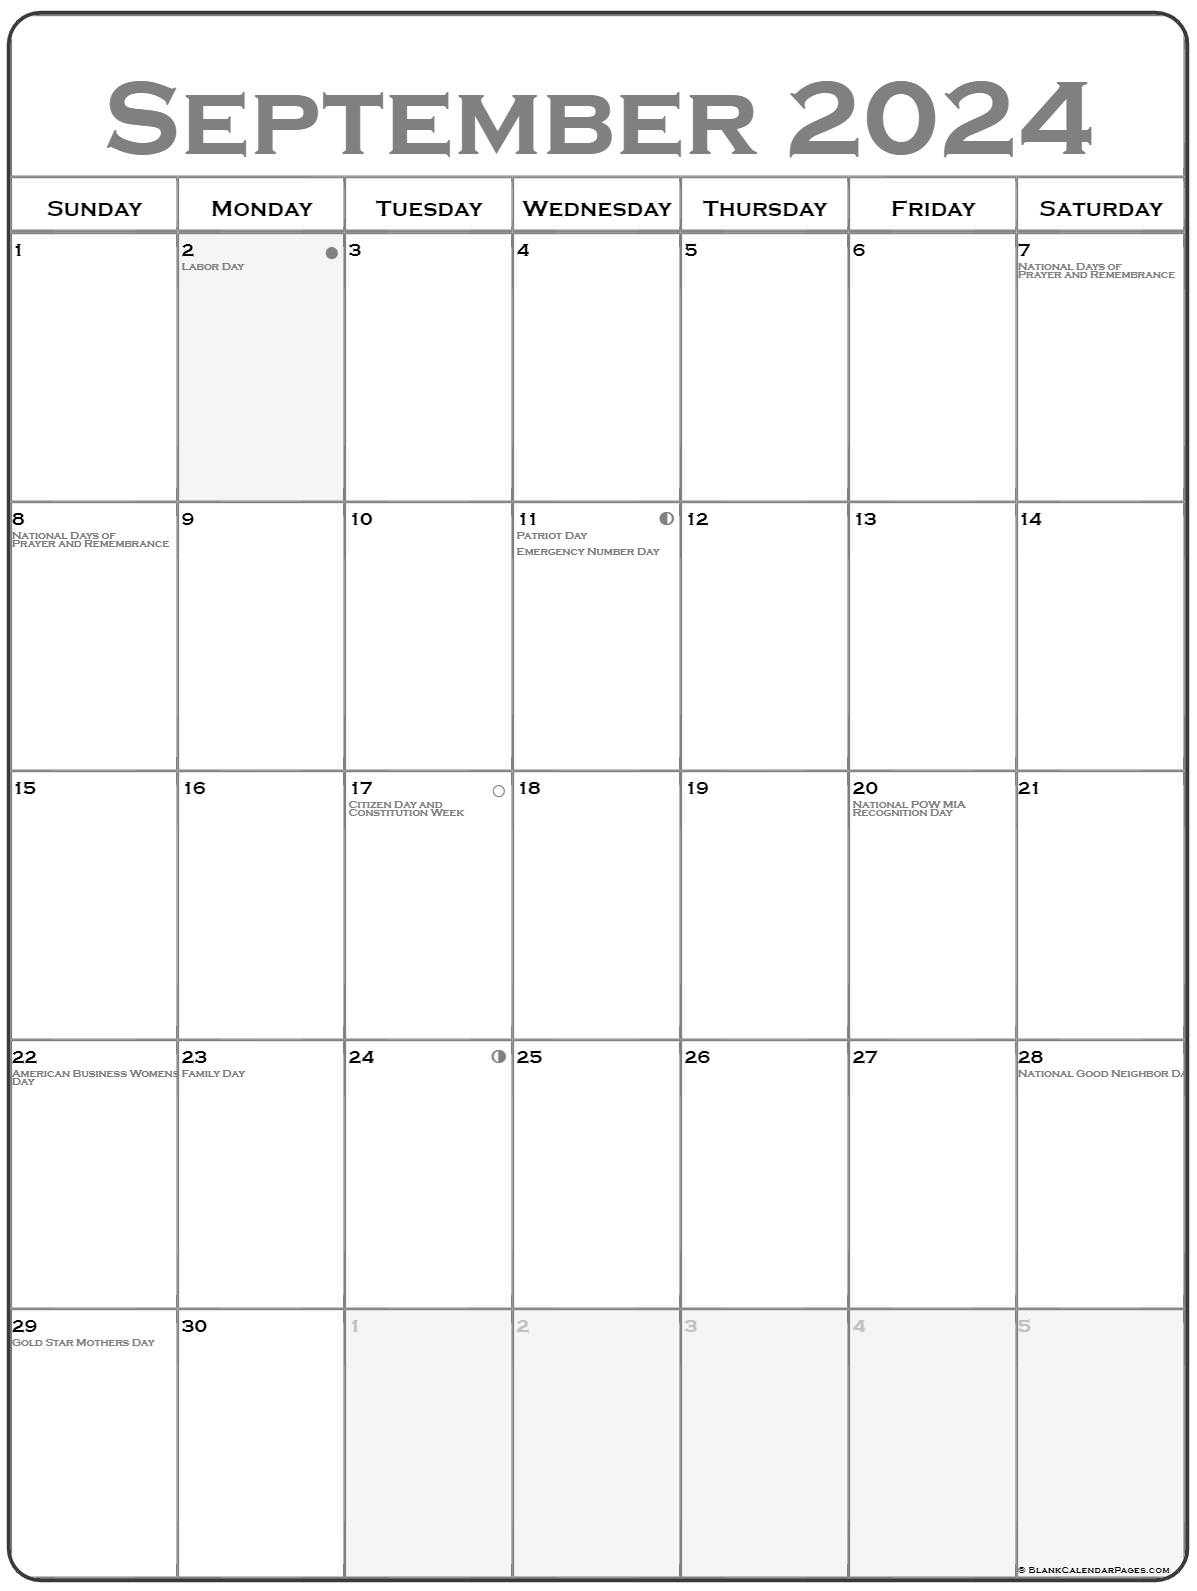 September Monday 2024 Calendar Printable Calendar Quickly Riset